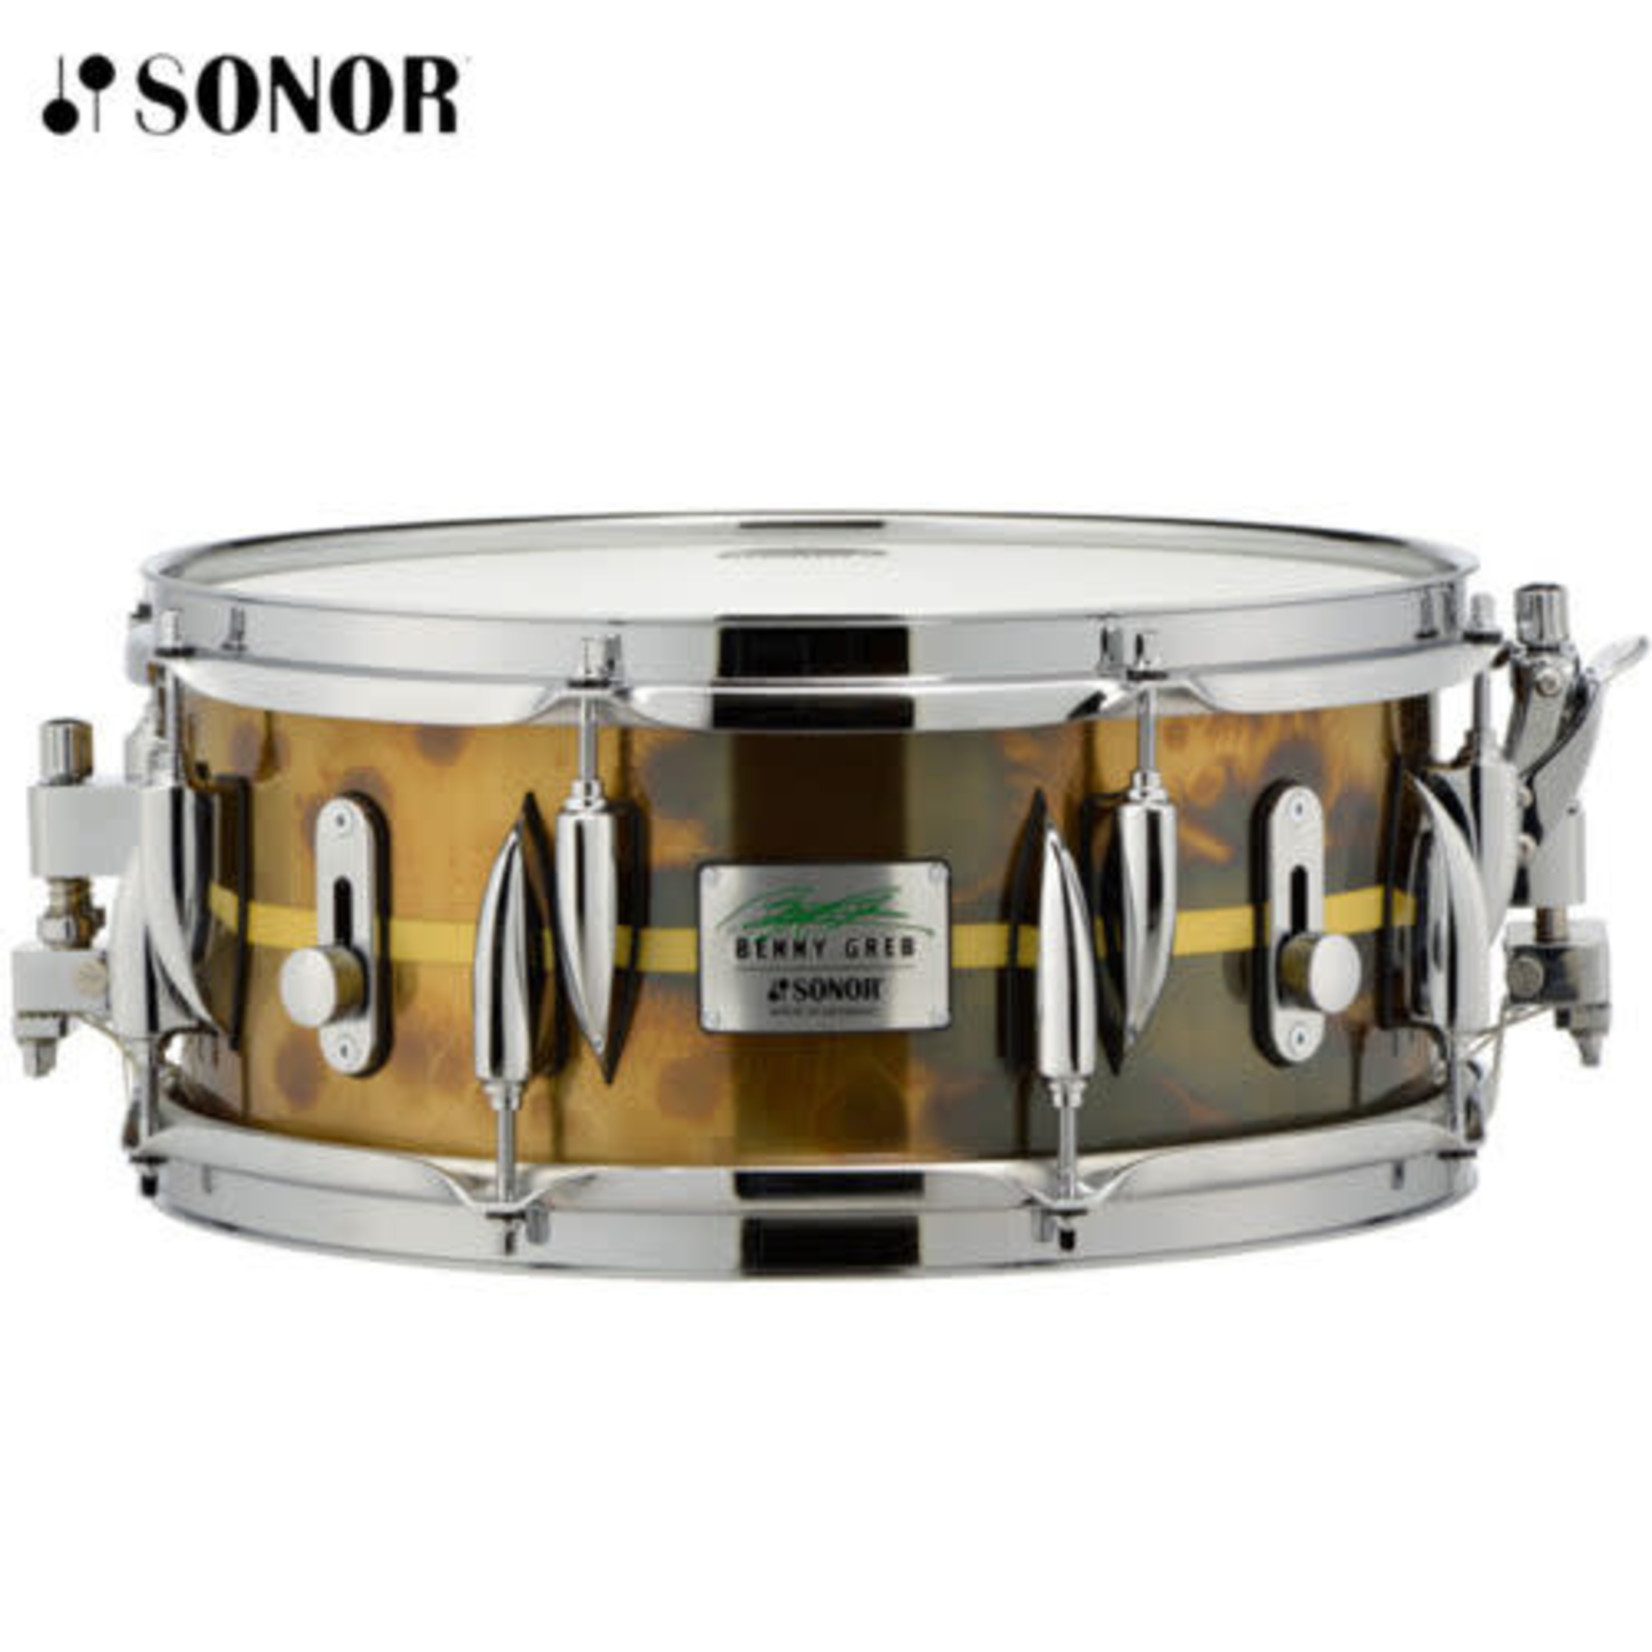 Sonor Sonor 5.75x13" Benny Greb Signature Brass Snare Drum